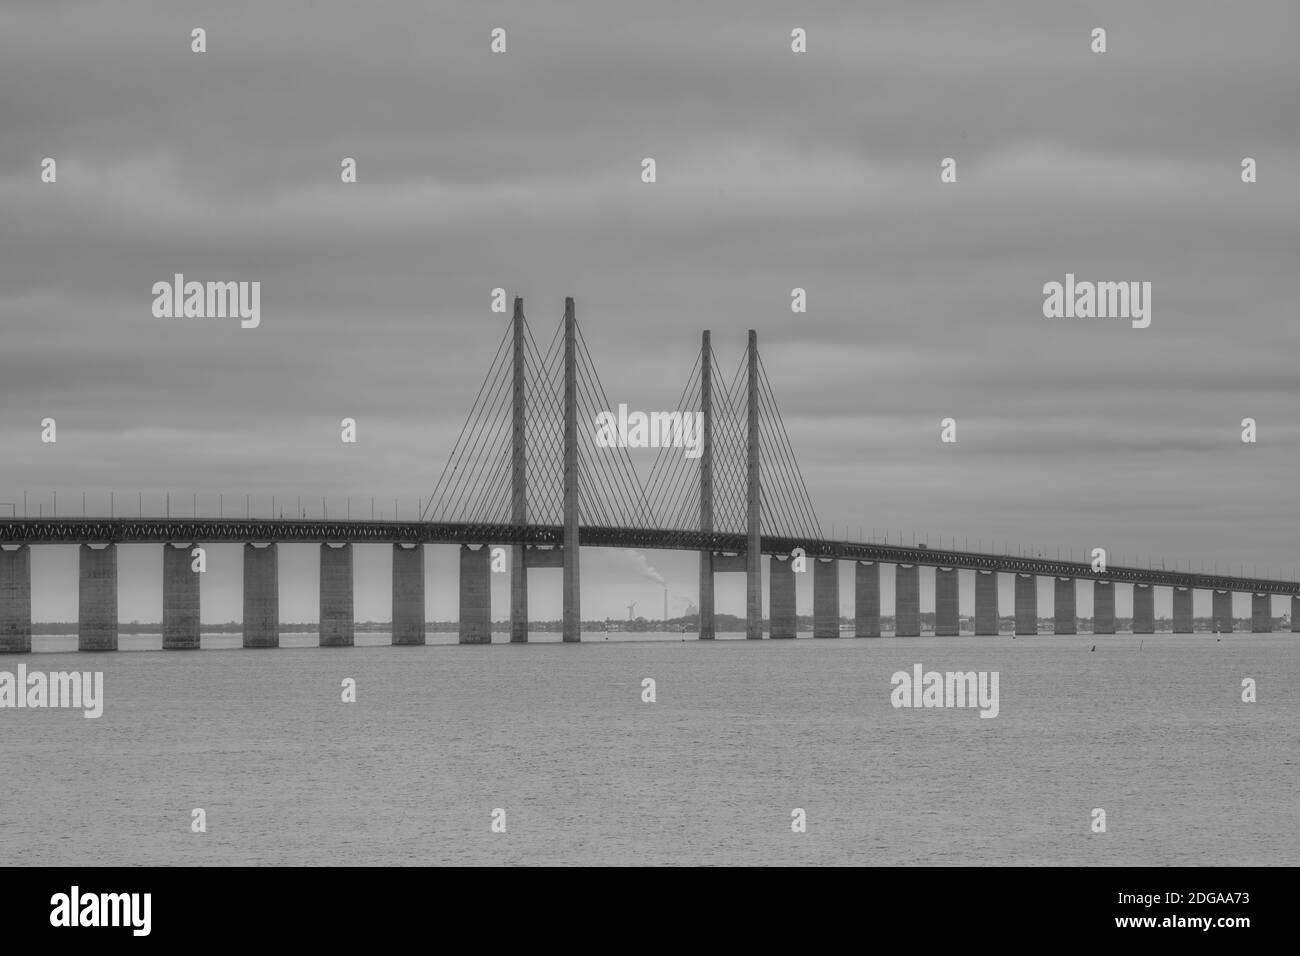 Una foto en blanco y negro del puente de Oresund. Este puente conecta Malmo, Suecia con Copenhague, Dinamarca a través de una autopista y un enlace ferroviario Foto de stock